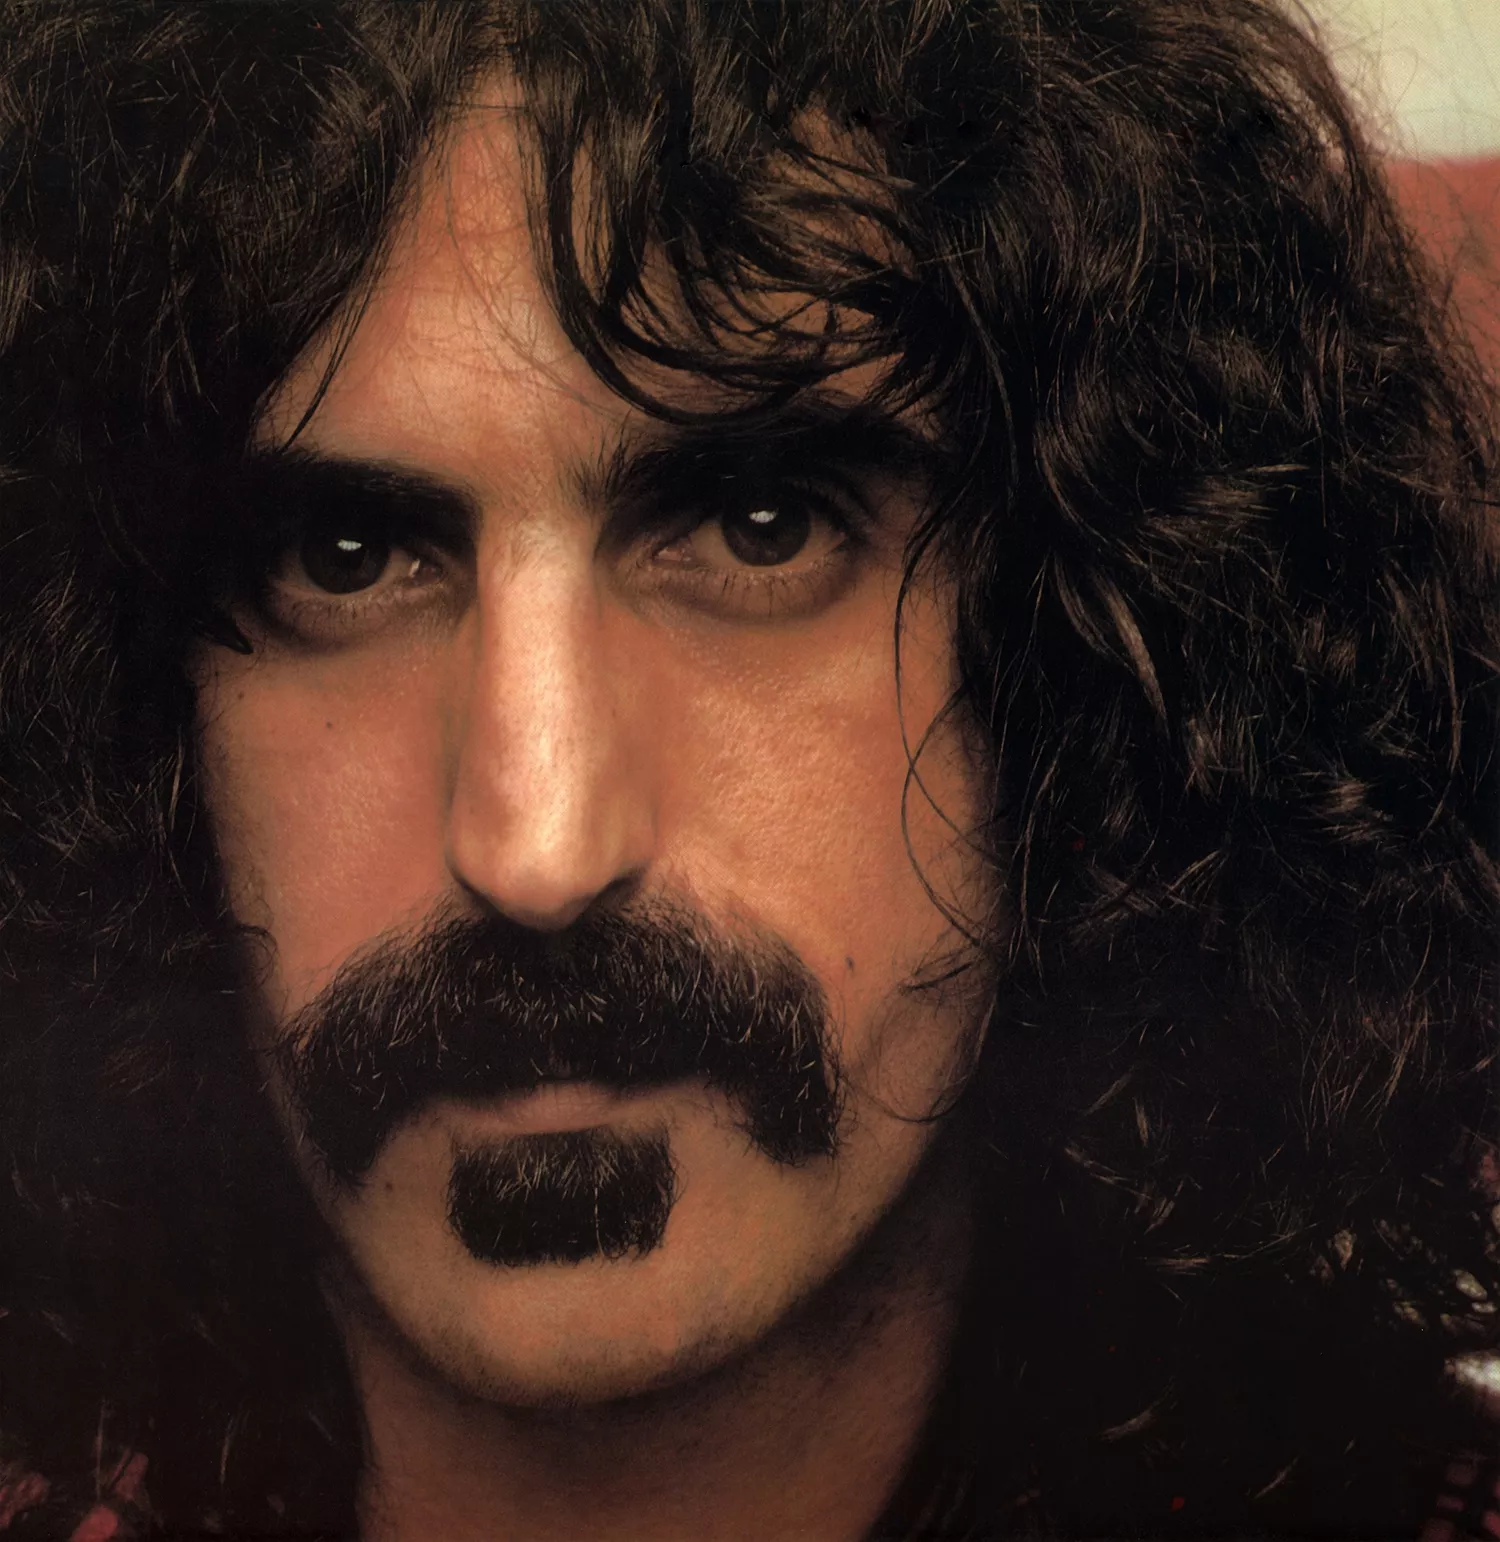 Frank Zappas sidste album får udgivelsesdato